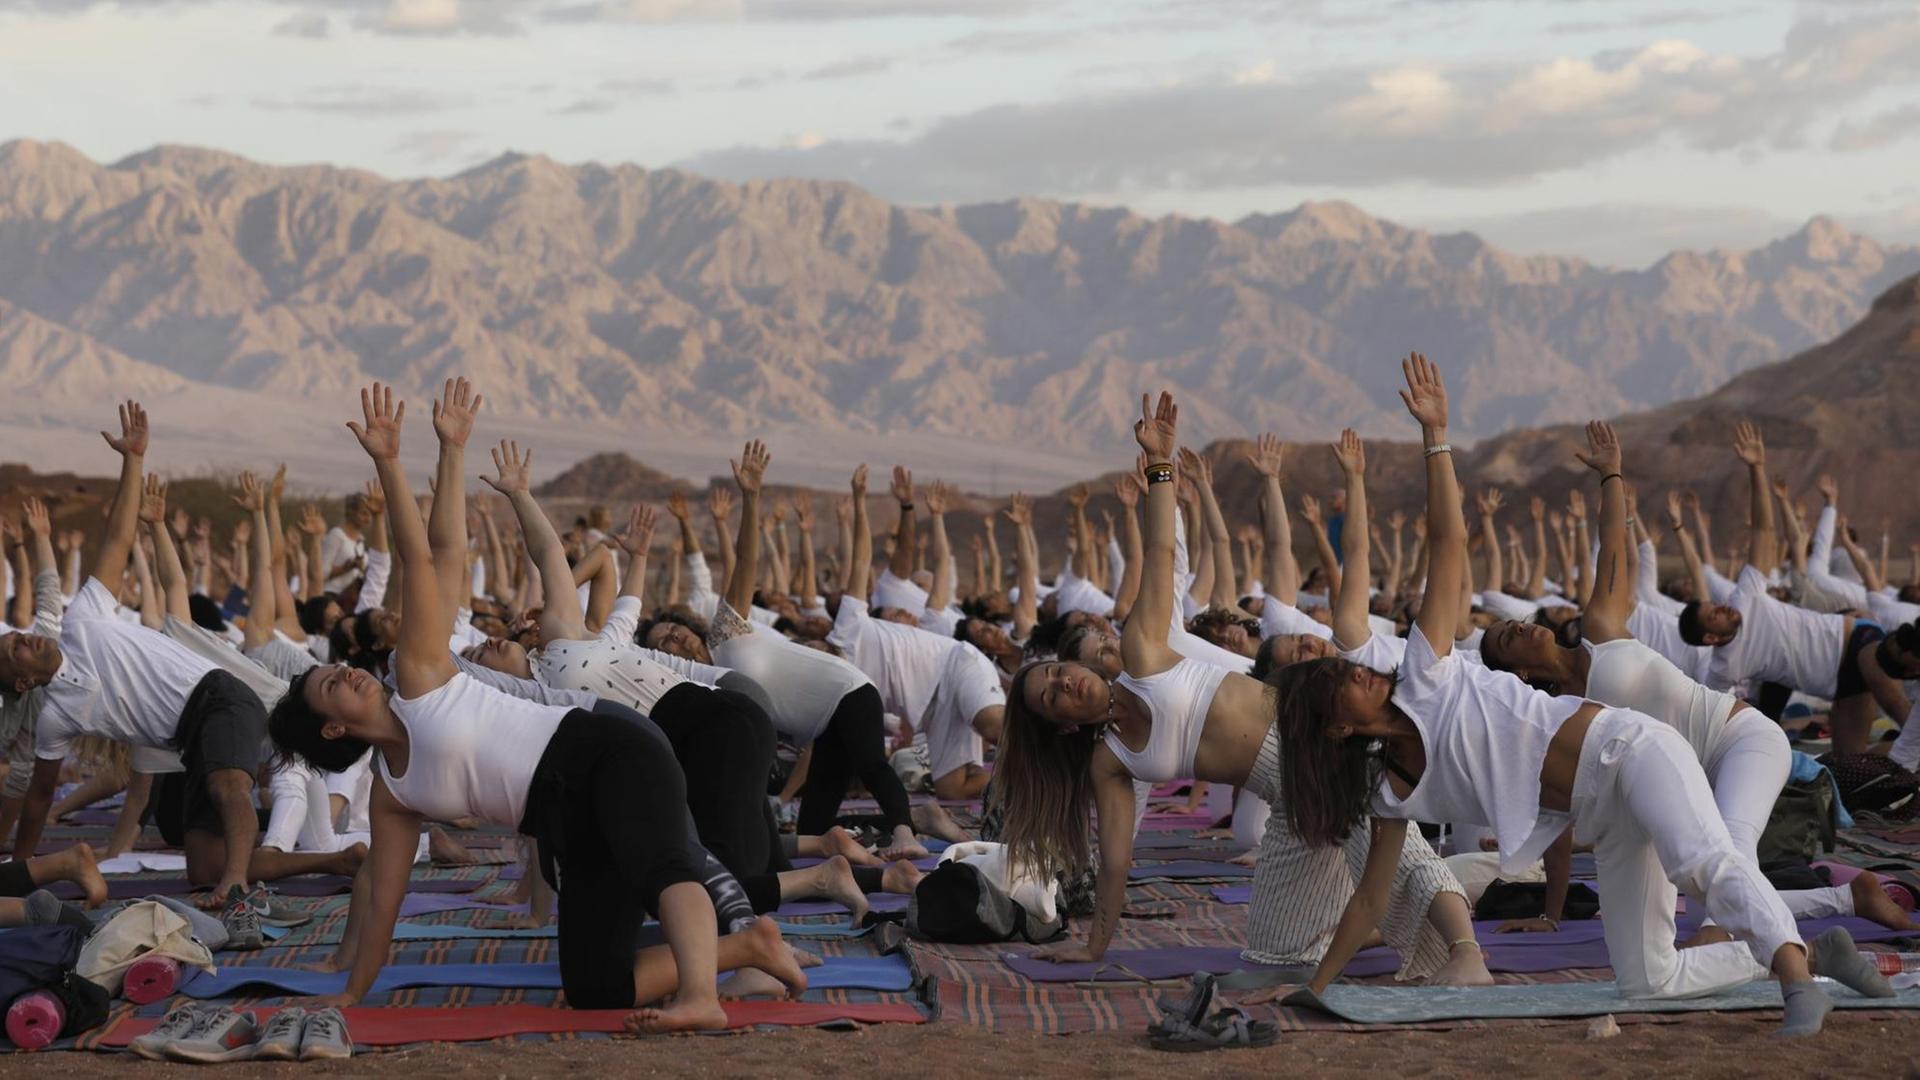 Tausend Yogis üben gemeinsam in der Arava Wüste in Israel Yoga.